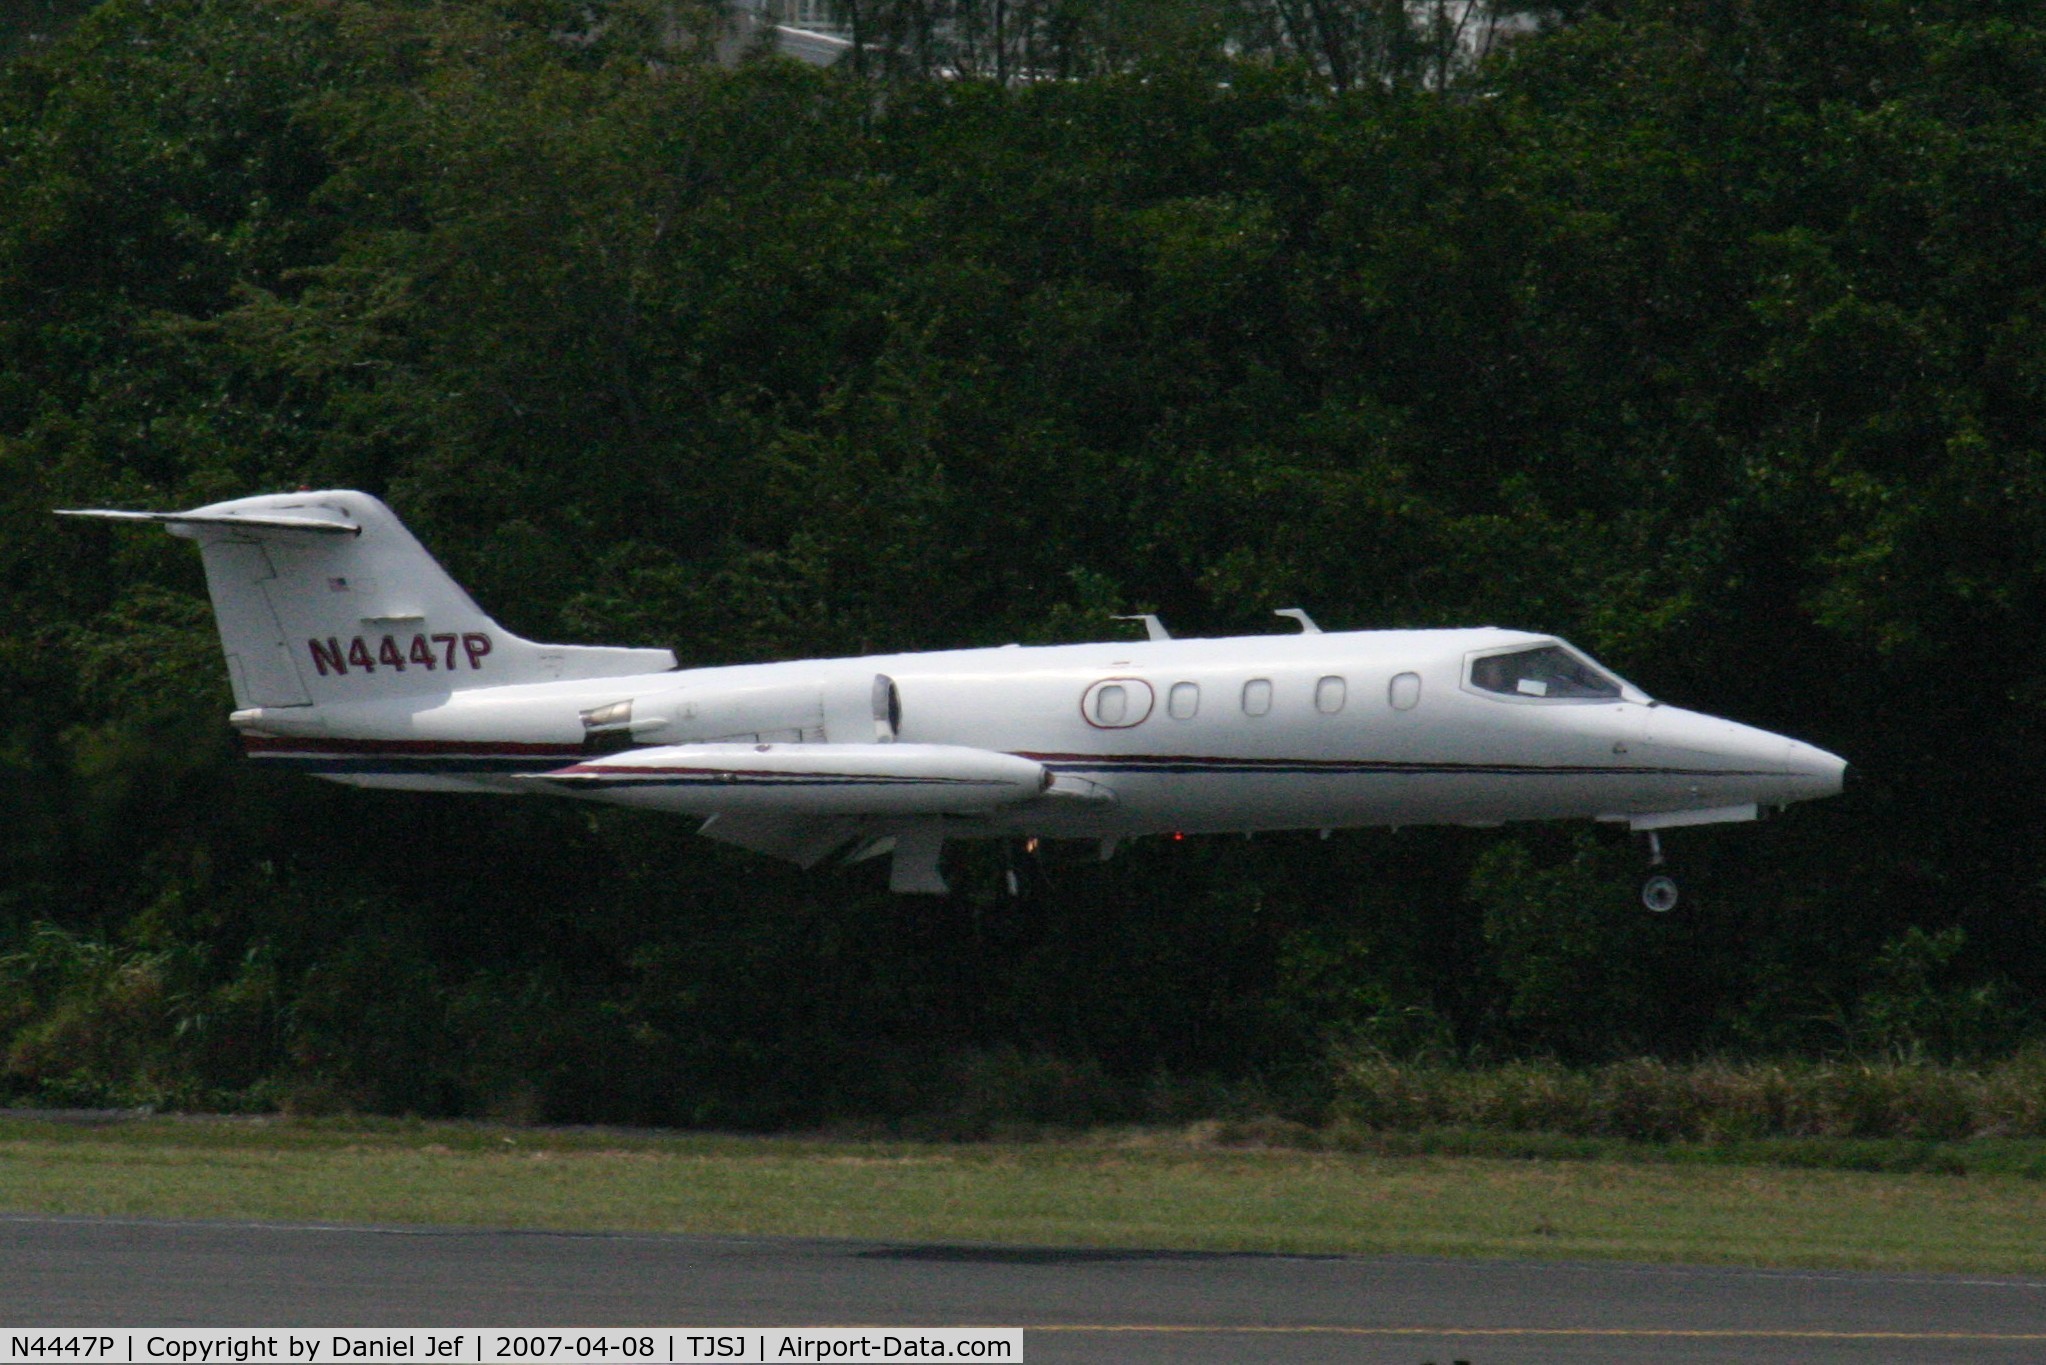 N4447P, 1981 Gates Learjet 25D C/N 338, N4447P landing at TJSJ